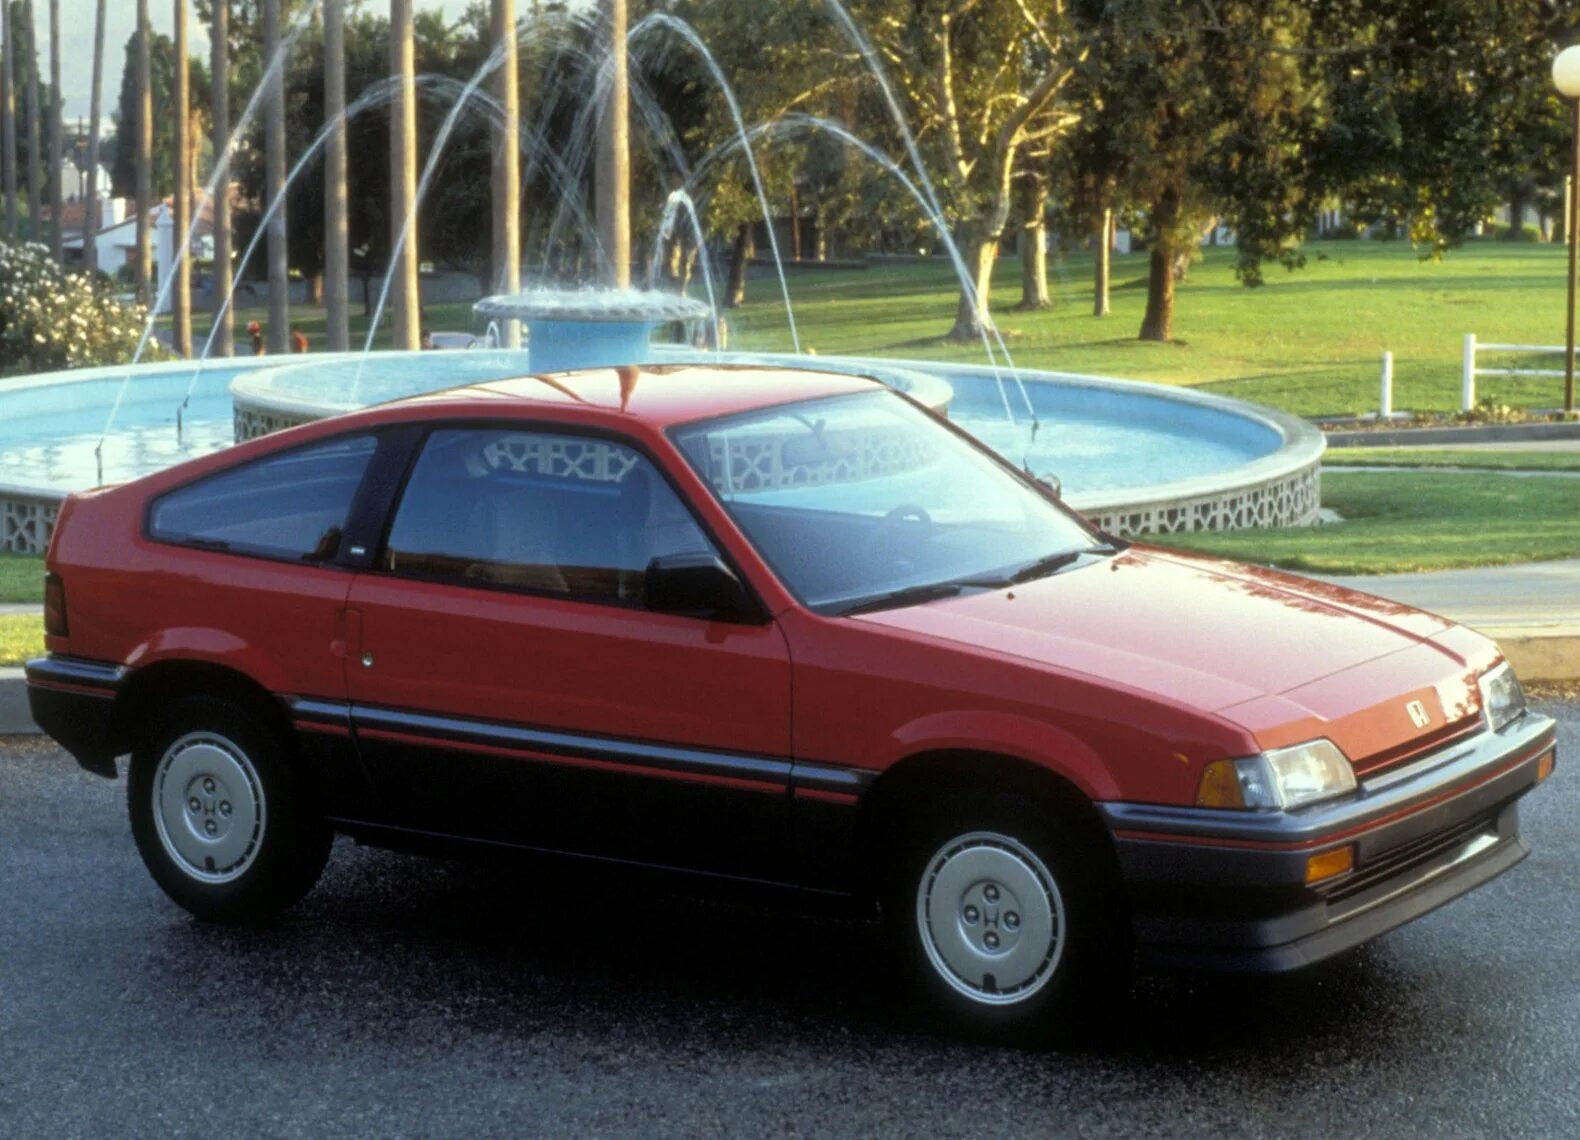 Honda Civic CRX 1986. Honda Civic CRX 1 поколение. Honda CR-X, 1986. Хонда Цивик 1986 купе. Хонда 1986